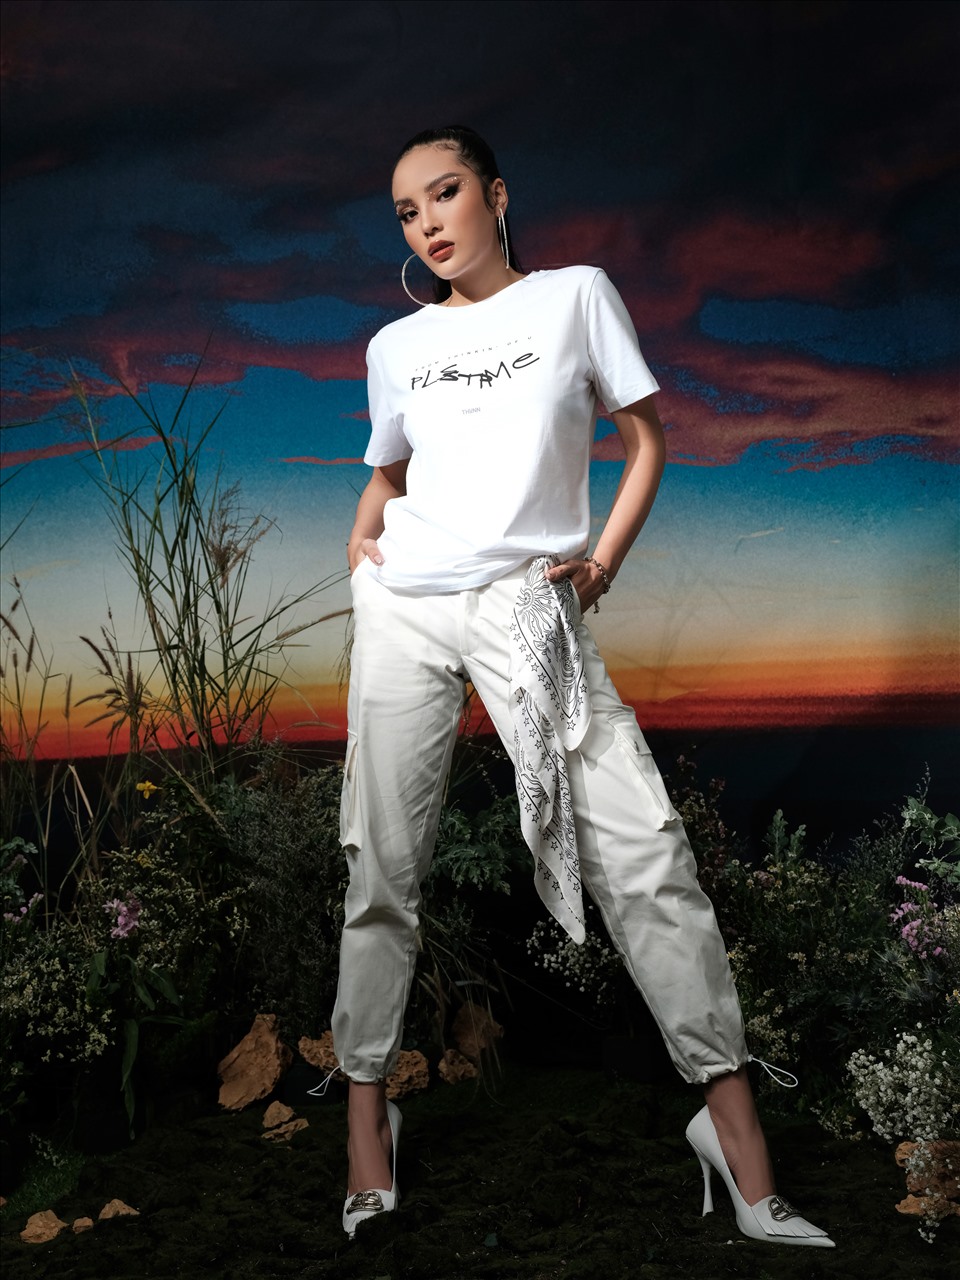 Siêu mẫu Minh Triệu kết hợp cùng Hoa hậu Kỳ Duyên sáng lập thương hiệu áo thun THUNN. Mới đây, cả hai cho ra mắt BST đầu tiên mang tên “𝐒𝐇𝐀𝐃𝐄𝐒 𝐎𝐅 𝐋𝐎𝐕𝐄” và nhận được nhiều lời khen.